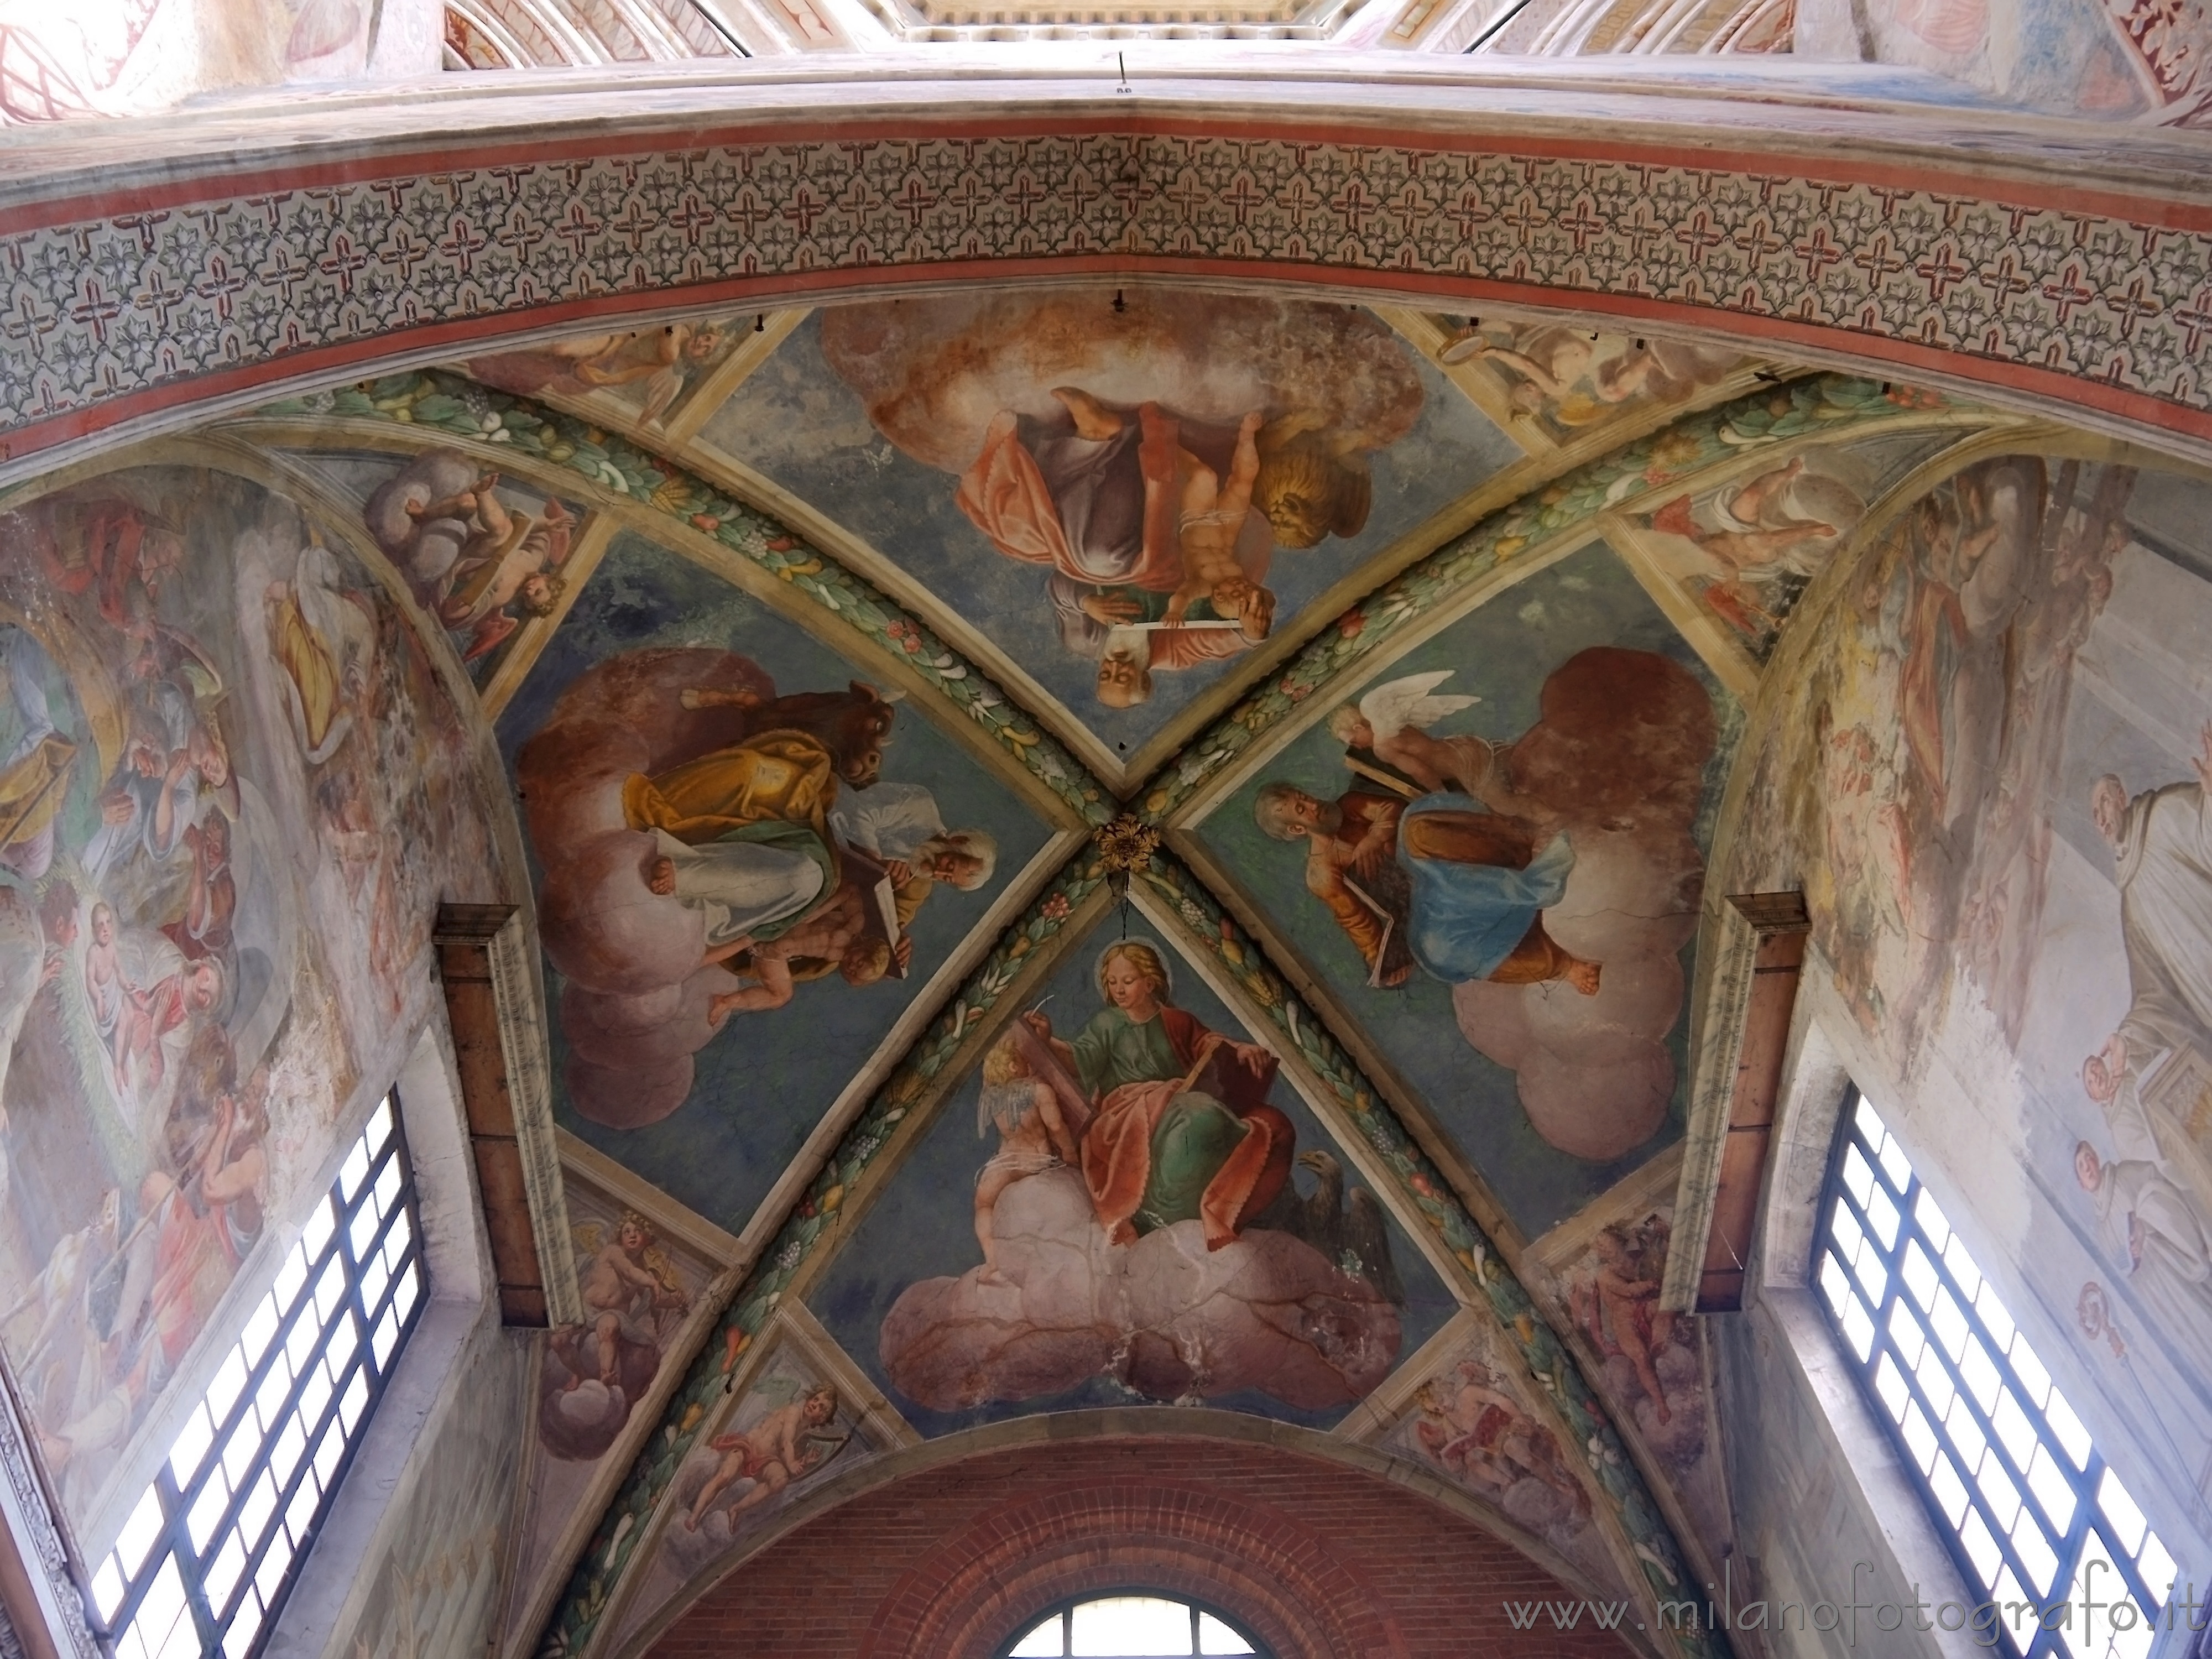 Milano: Affreschi sulla cupola dell'abside dell'Abbazia di Chiaravalle - Milano